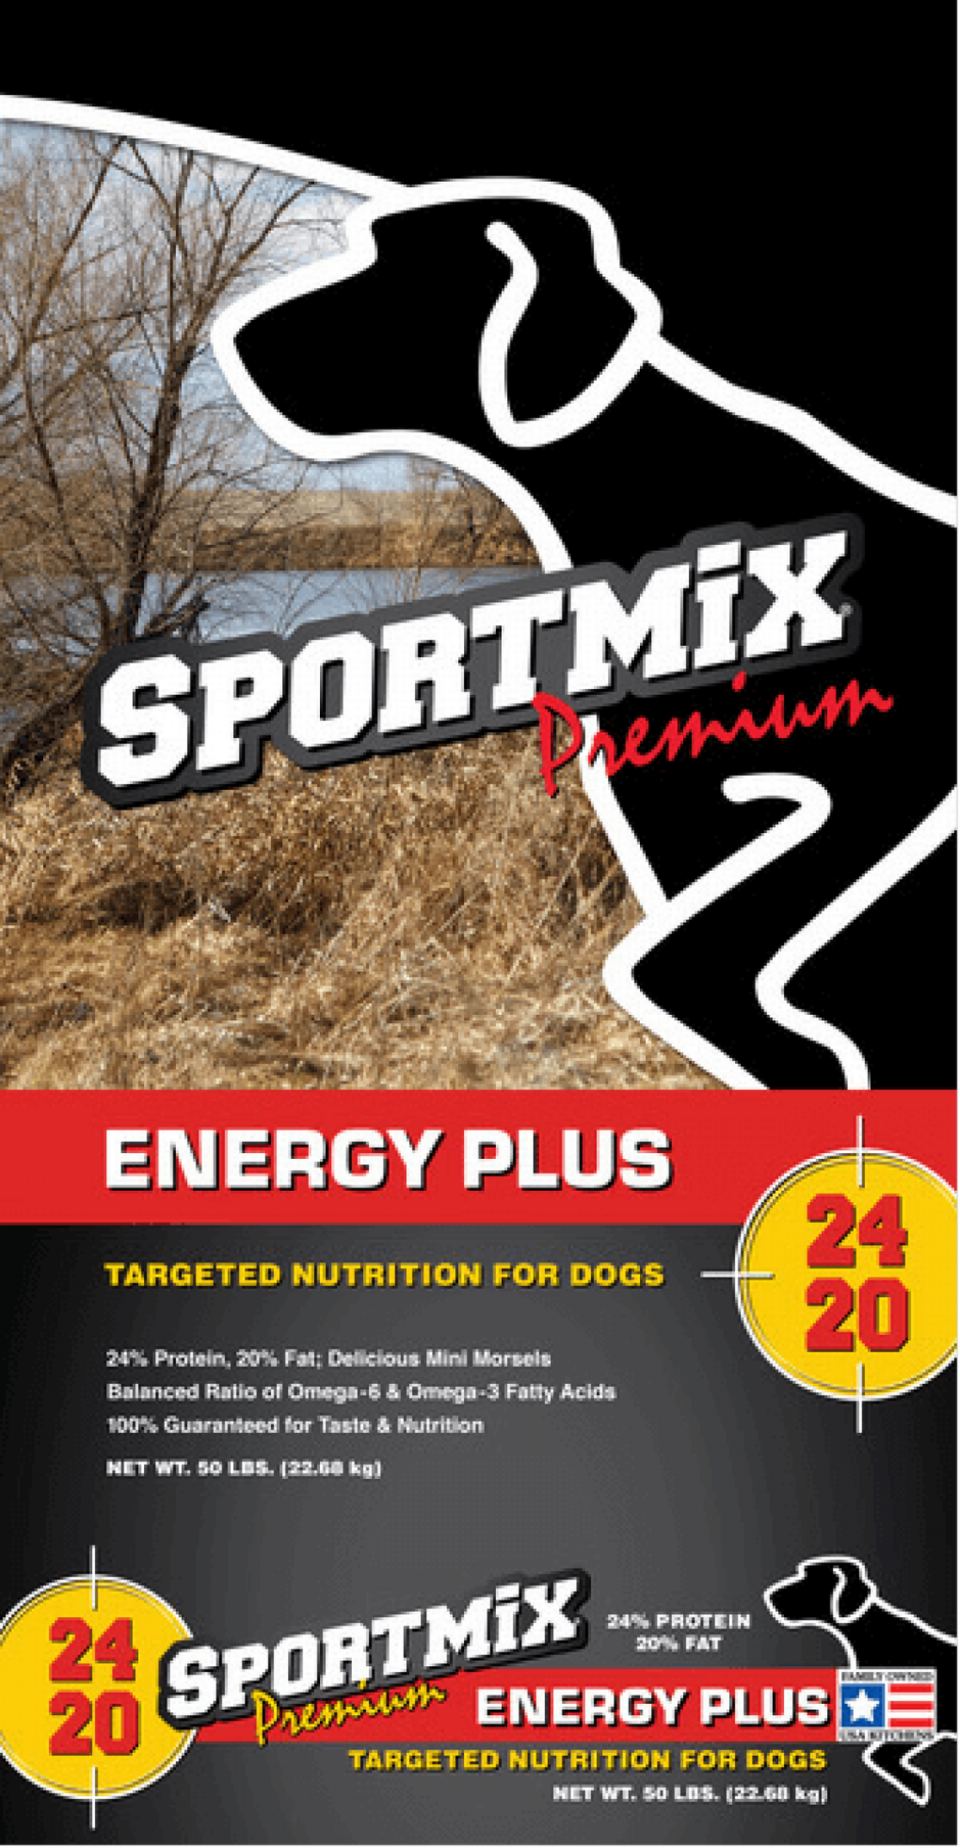 Sportmix Premium Energy Plus